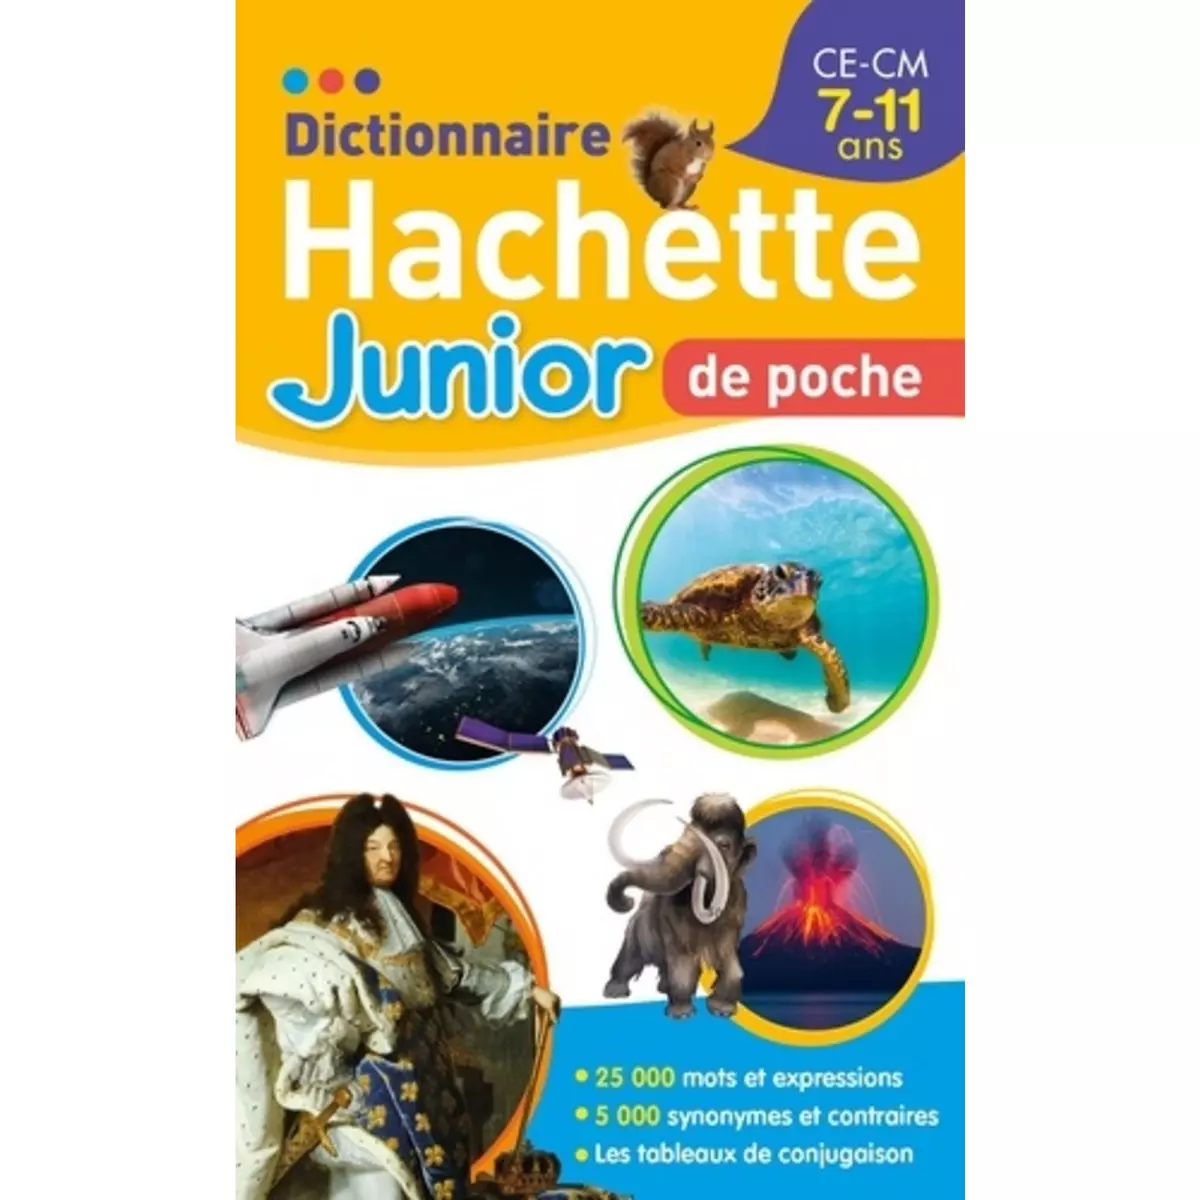  DICTIONNAIRE HACHETTE JUNIOR DE POCHE CE-CM, Gaillard Bénédicte